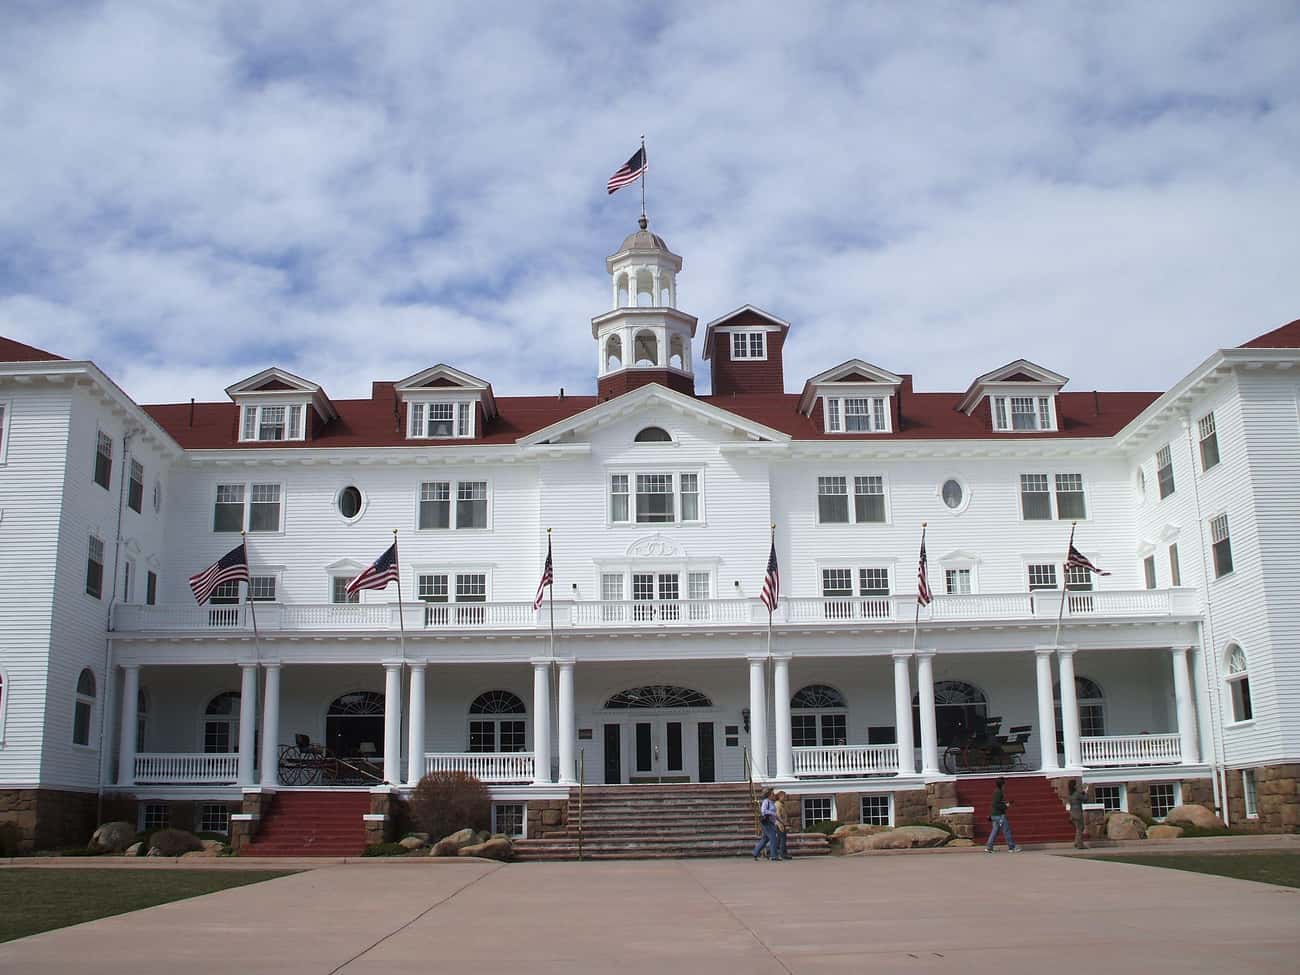 Colorado: The Stanley Hotel